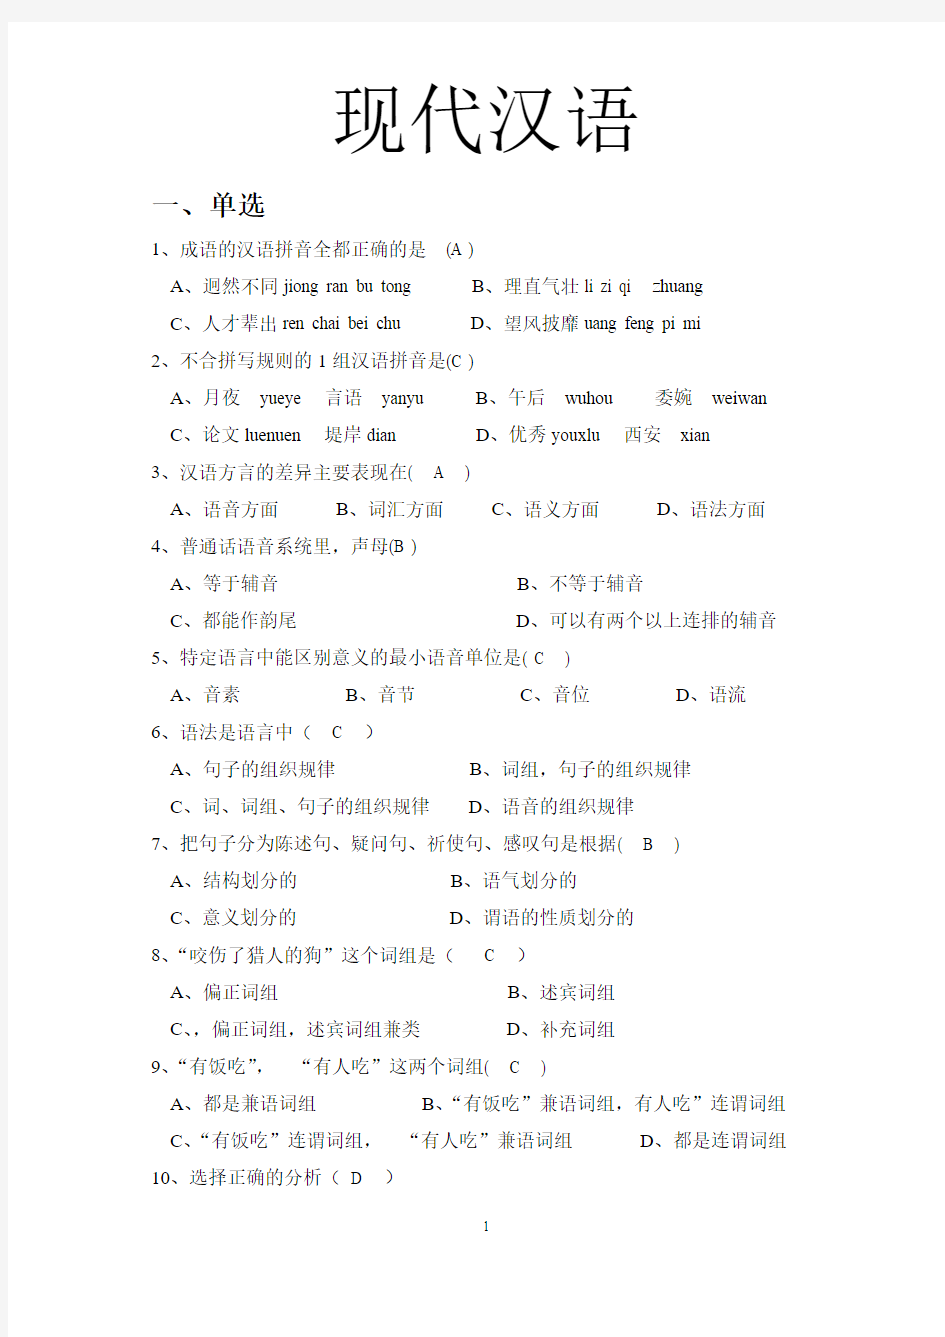 现代汉语试题库